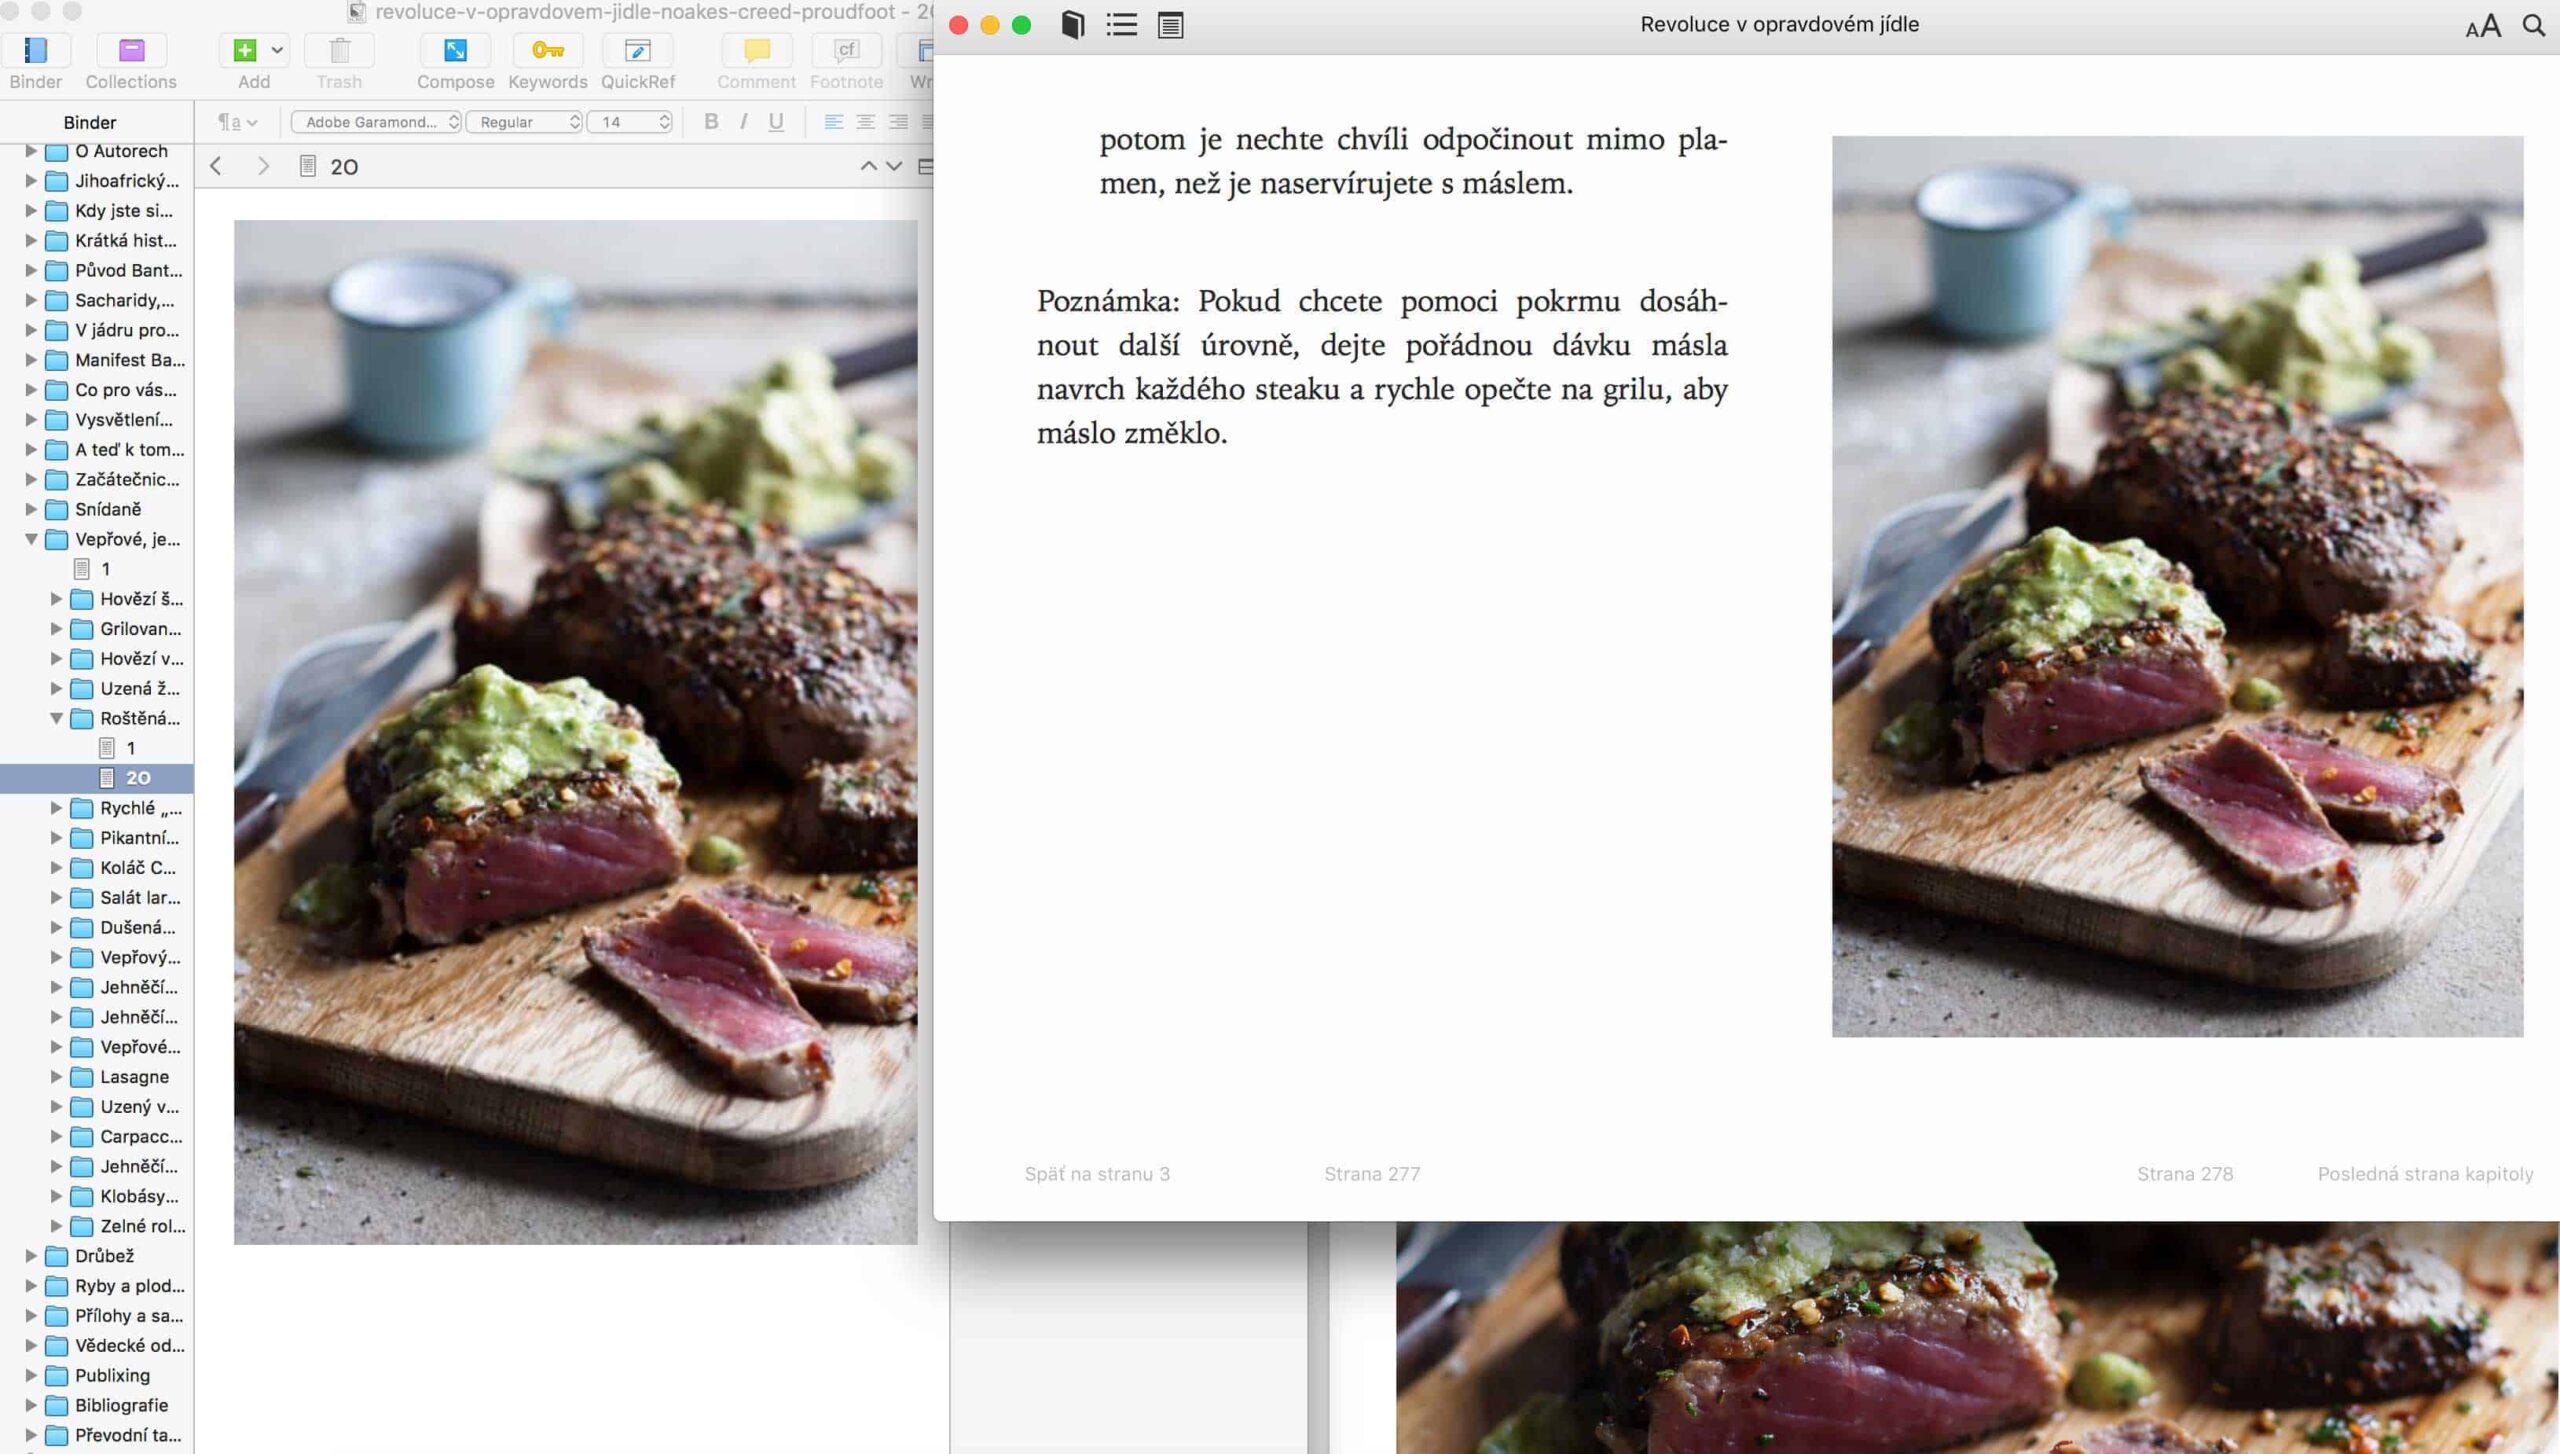 Príprave e-knihy Revoluce v opravdovém jídle